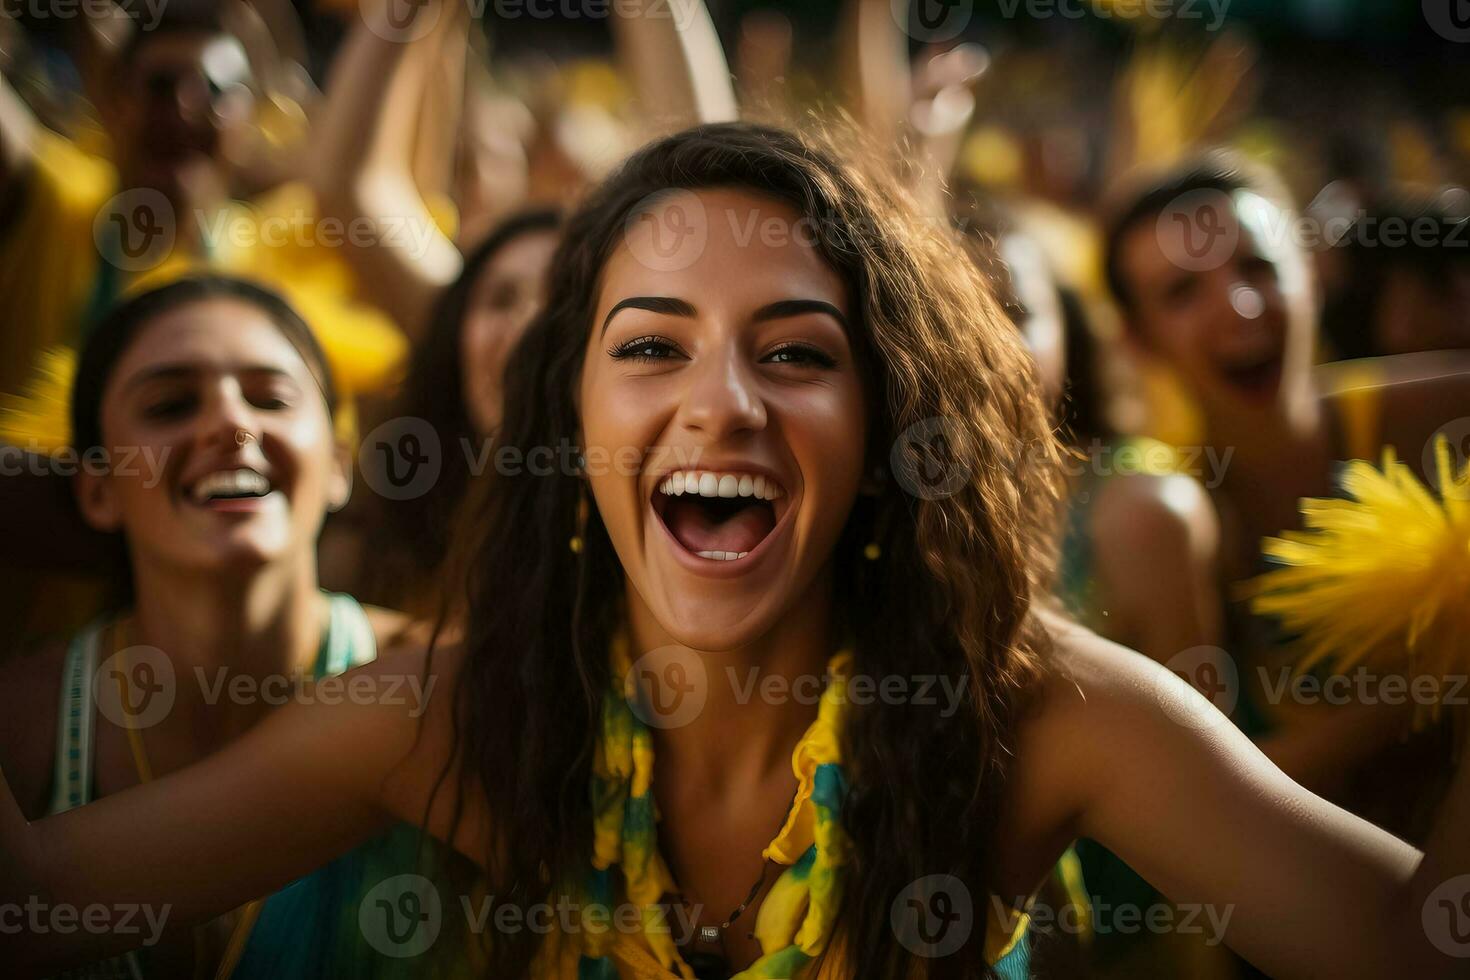 brasileiro de praia futebol fãs a comemorar uma vitória foto